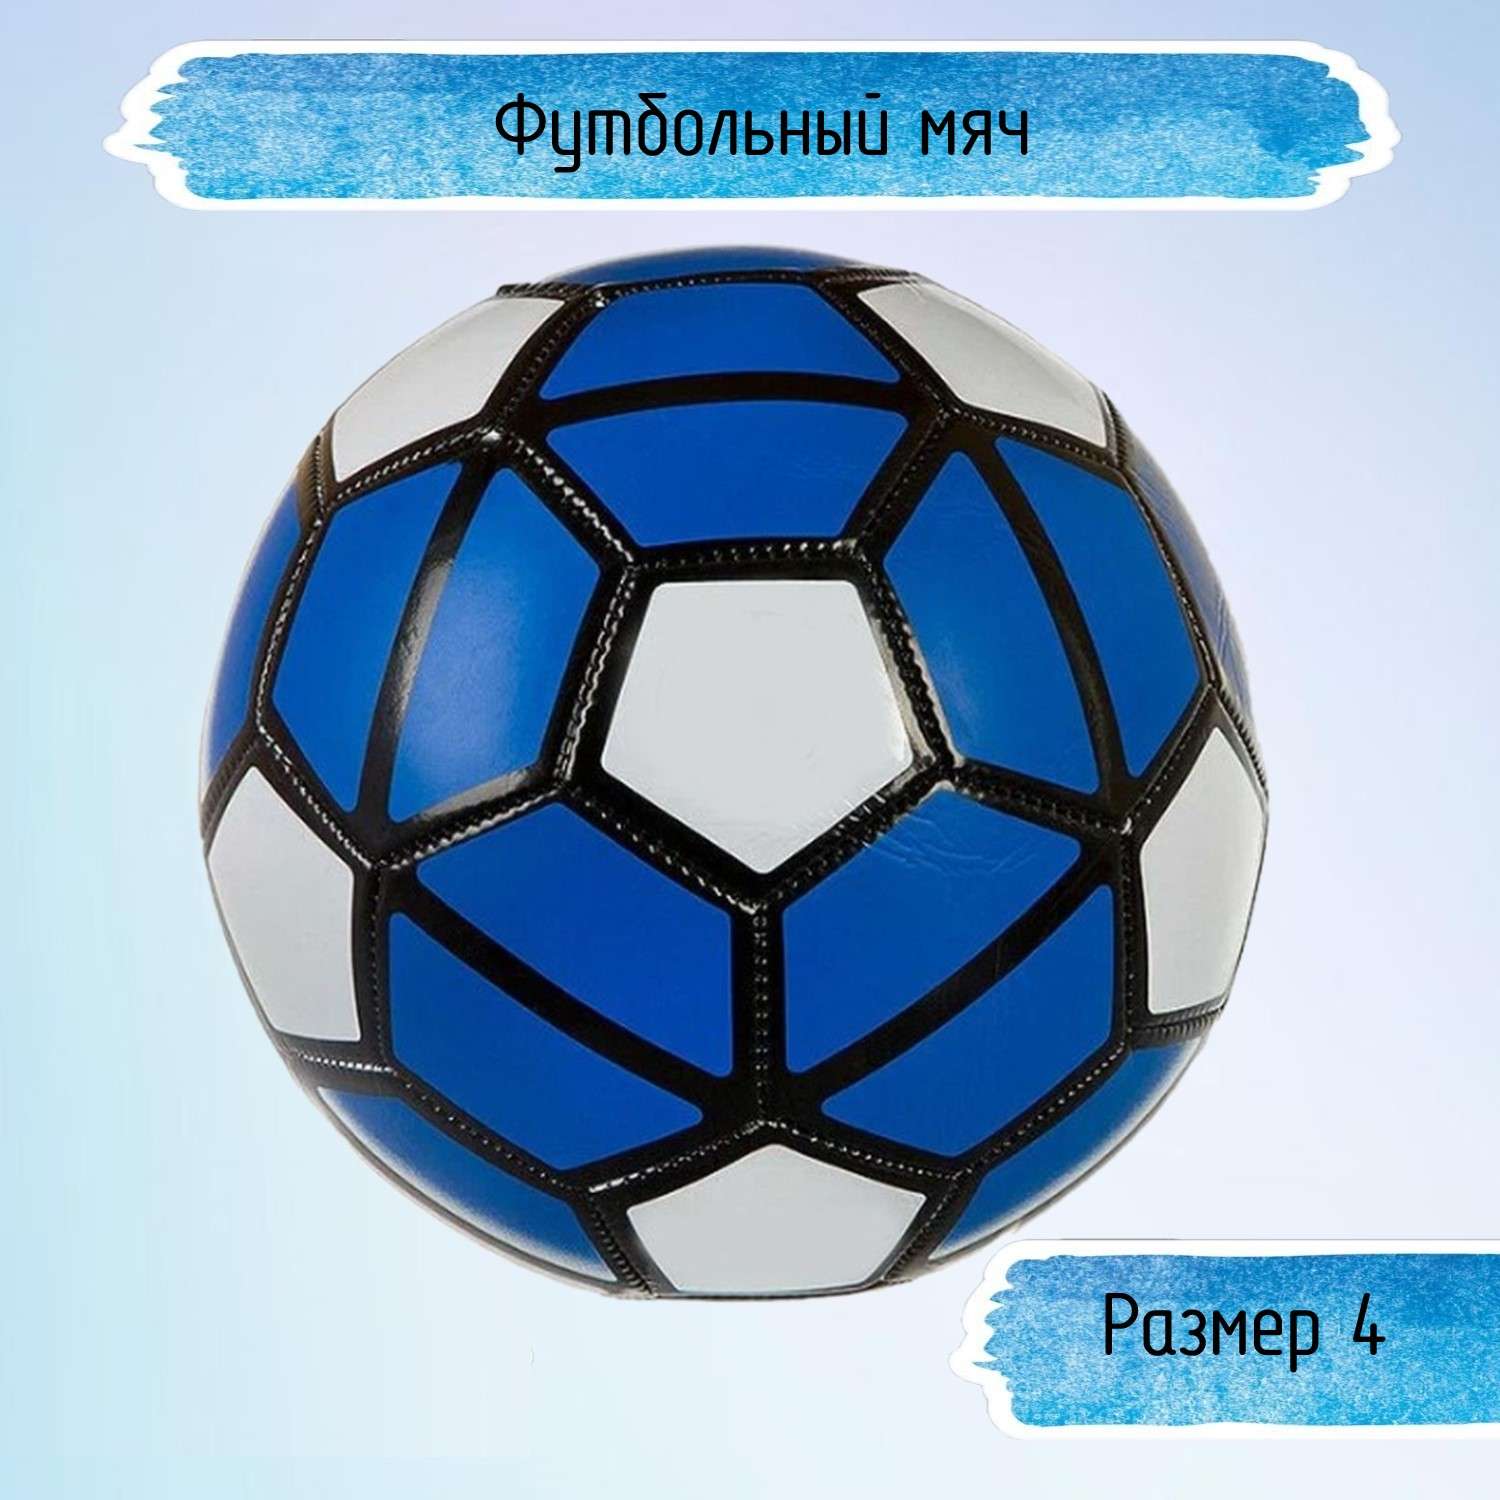 Футбольный мяч Uniglodis 32 панели размер 4 синий - фото 1